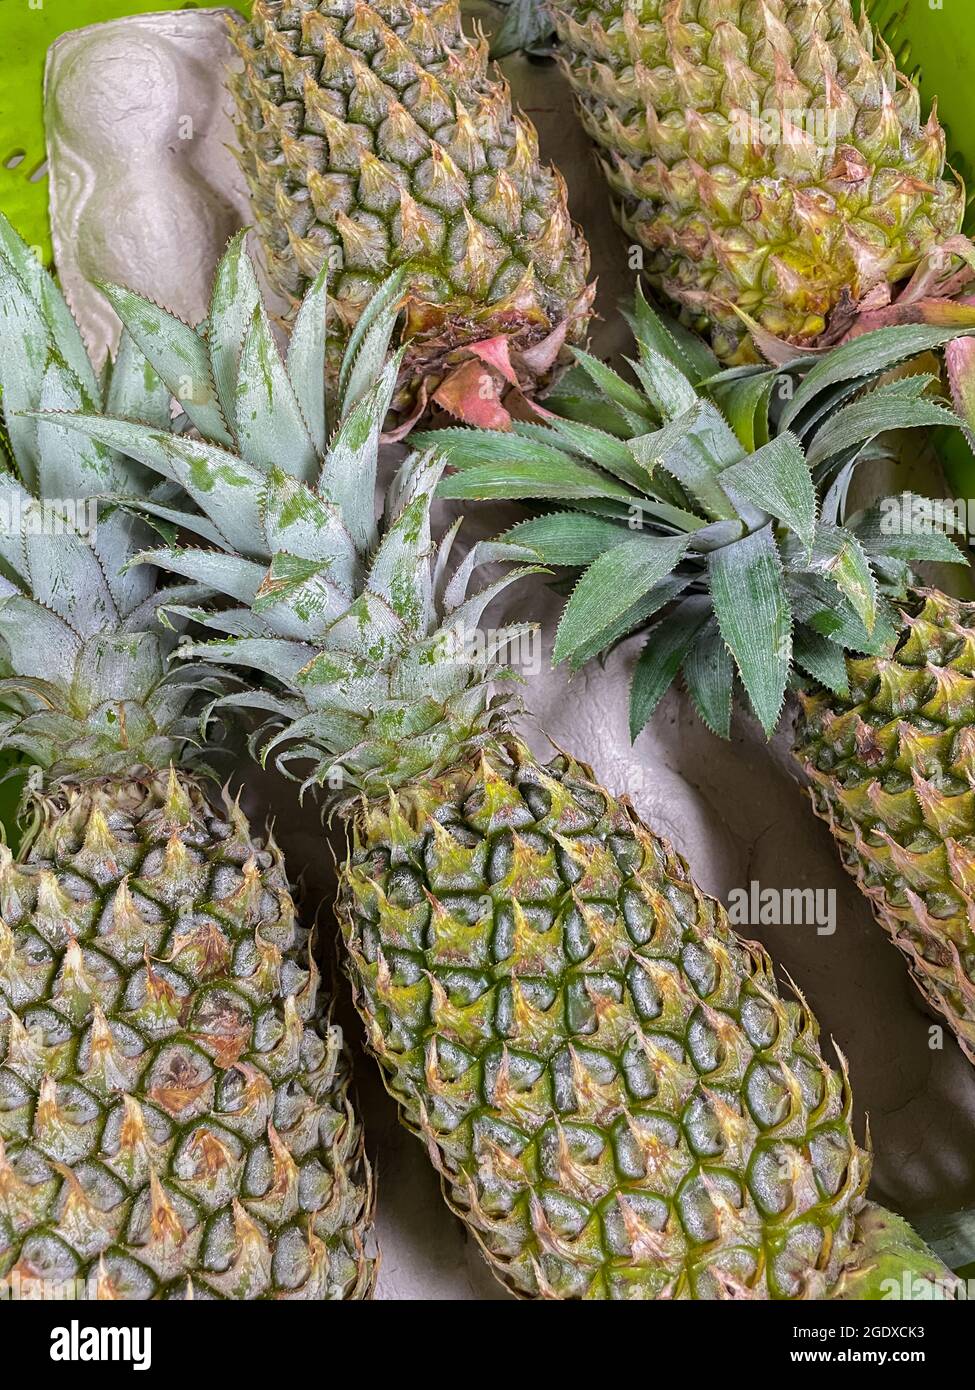 Primo piano immagine di ananas freschi e maturi con foglia tenuta insieme Foto Stock